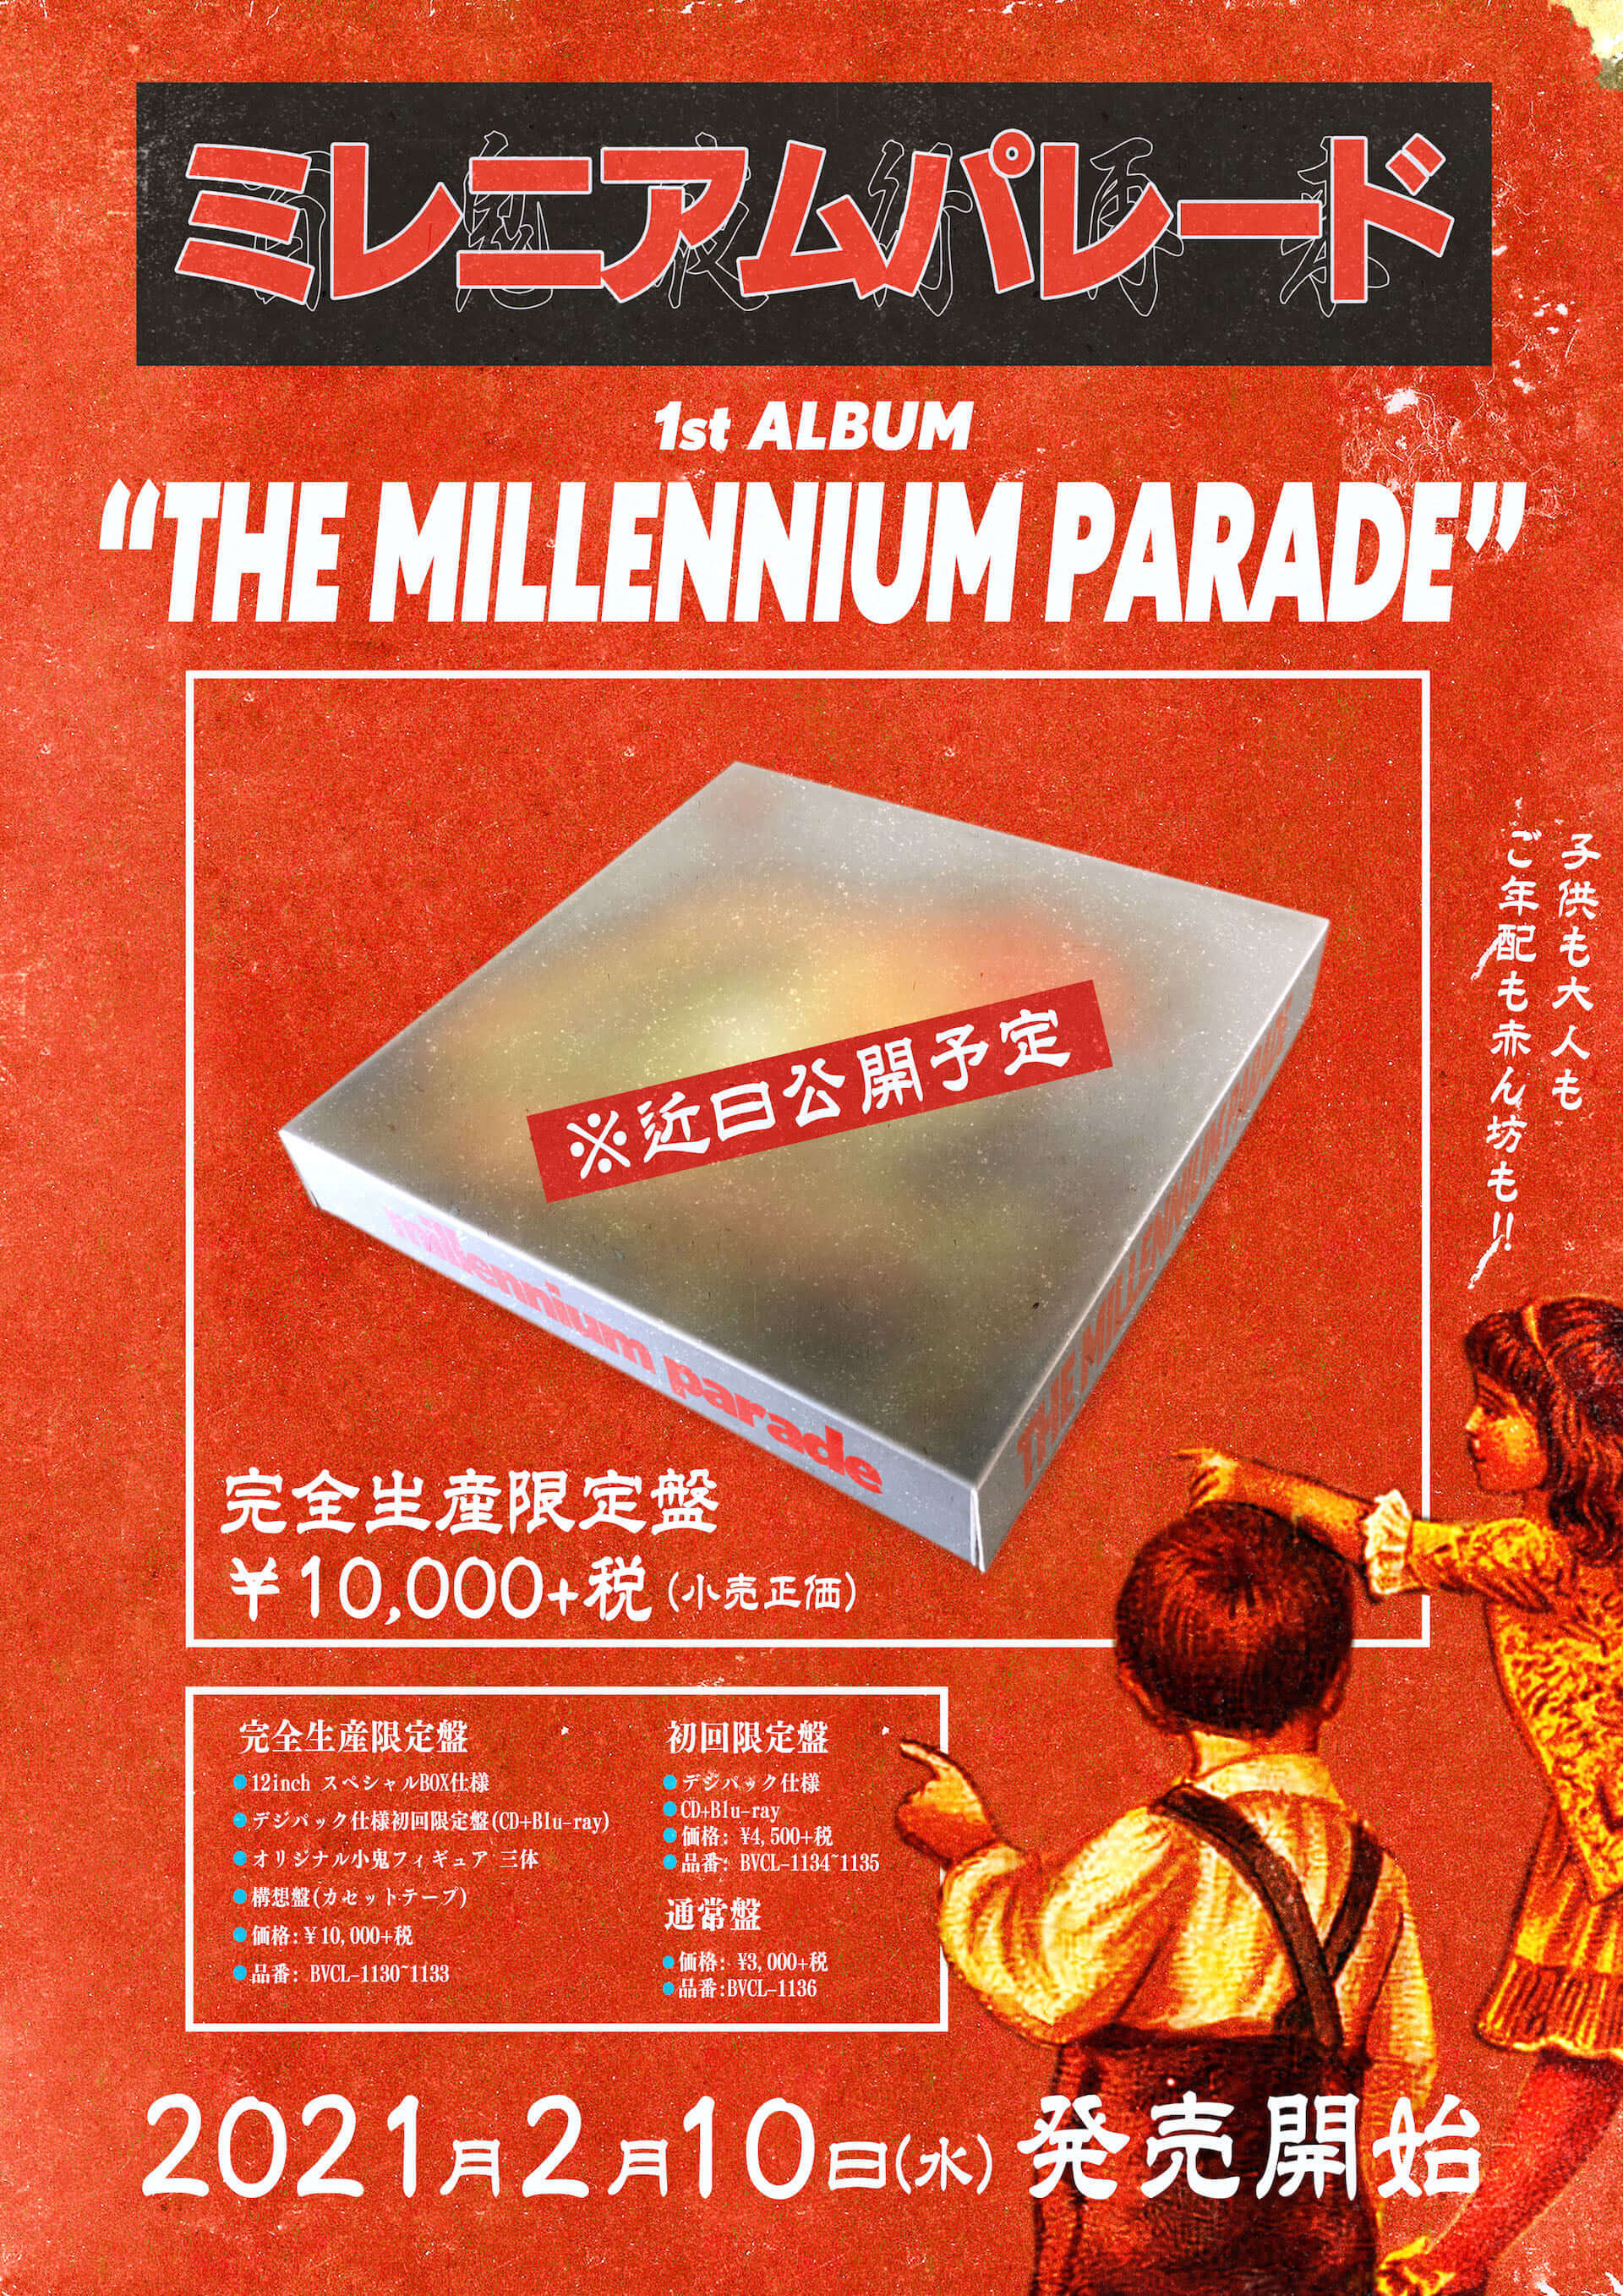 常田大希率いるミレニアム・パレードのファーストアルバム『THE MILLENNIUM PARADE』新アーティスト写真が公開